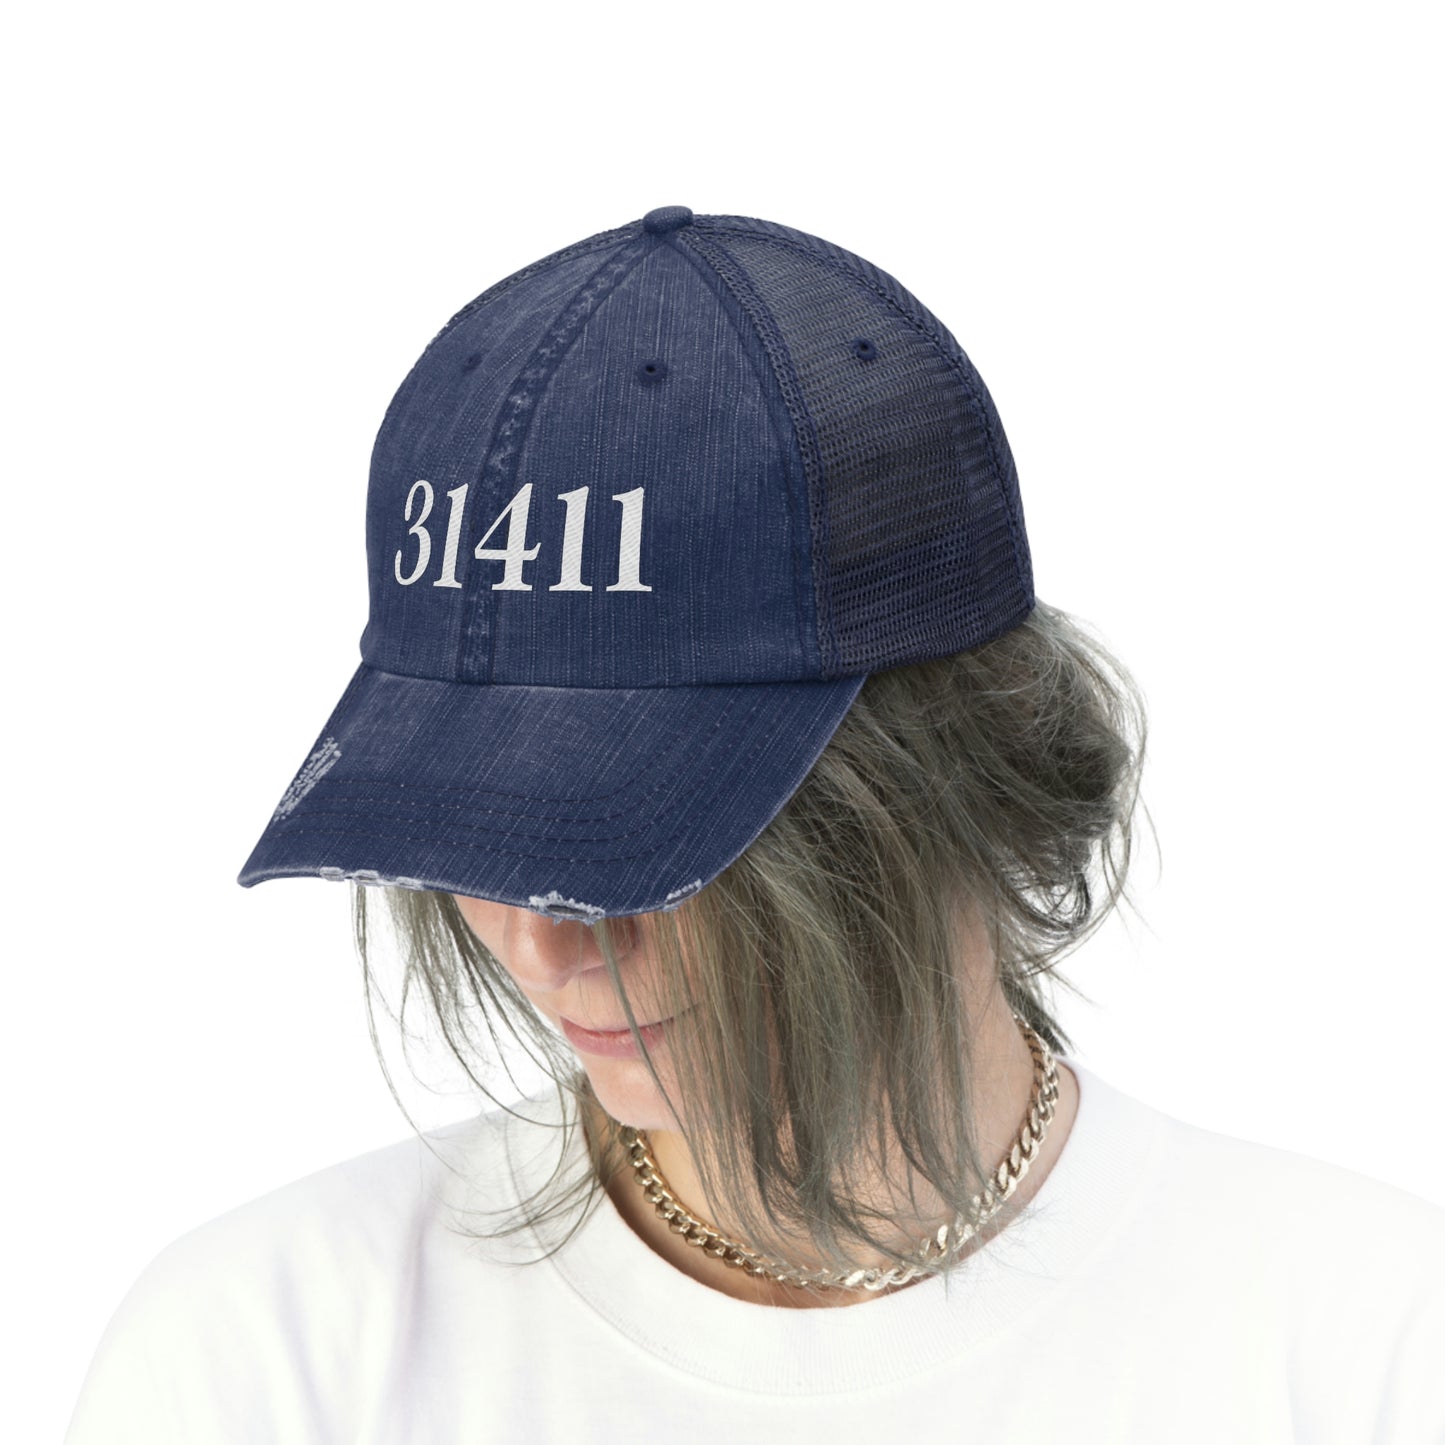 31411 hat